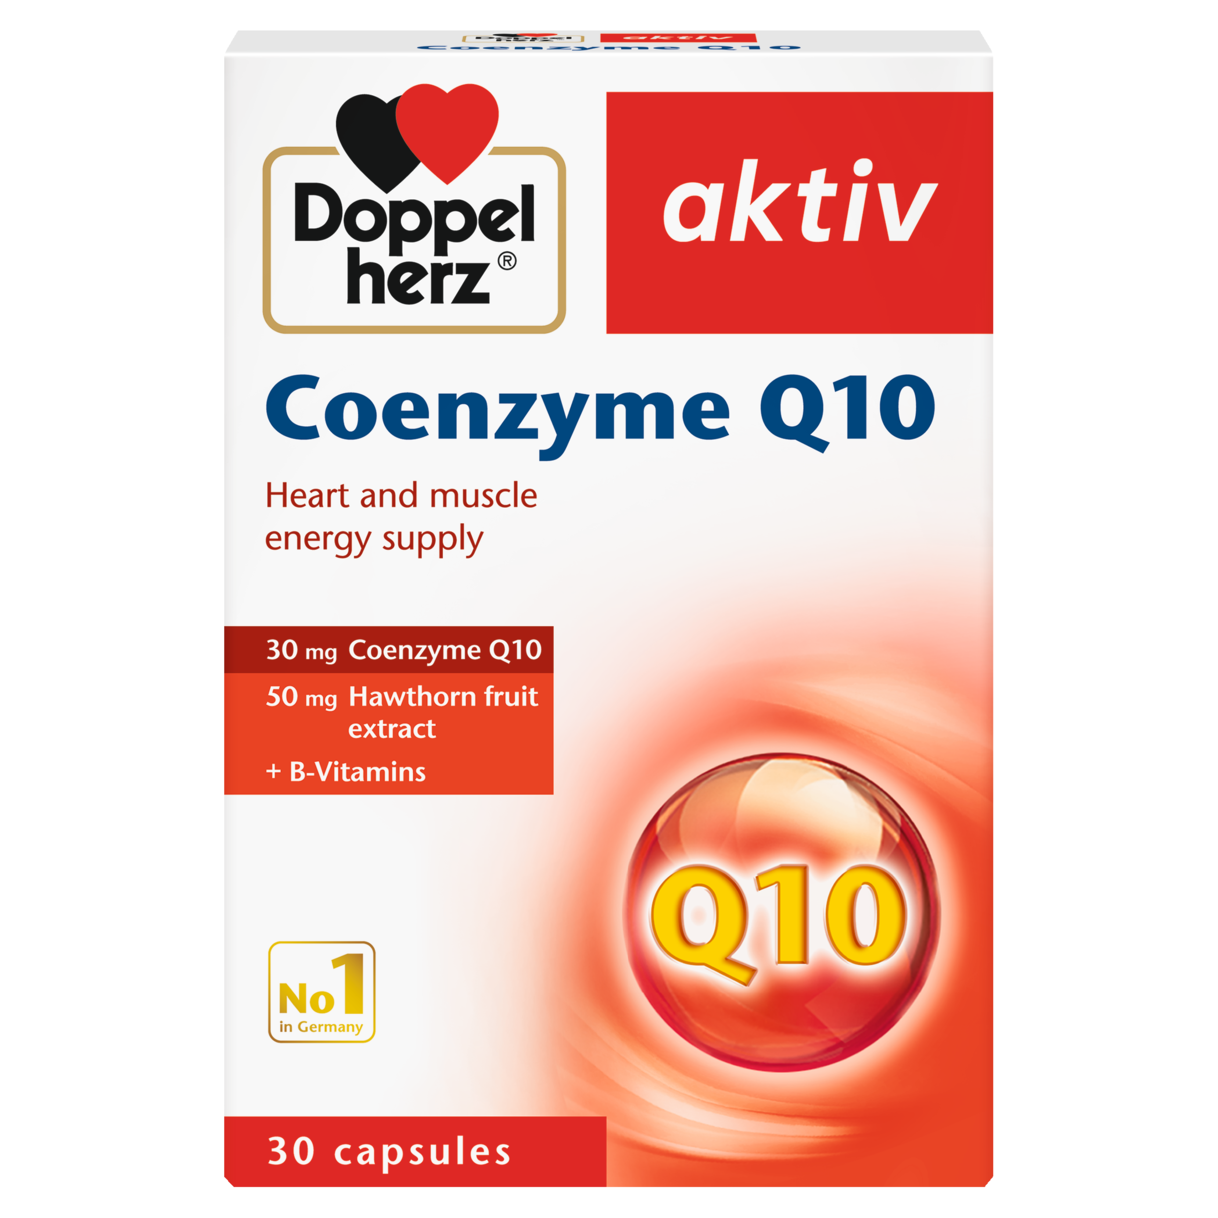 Doppelherz Coenzyme Q10 - Doppelherz